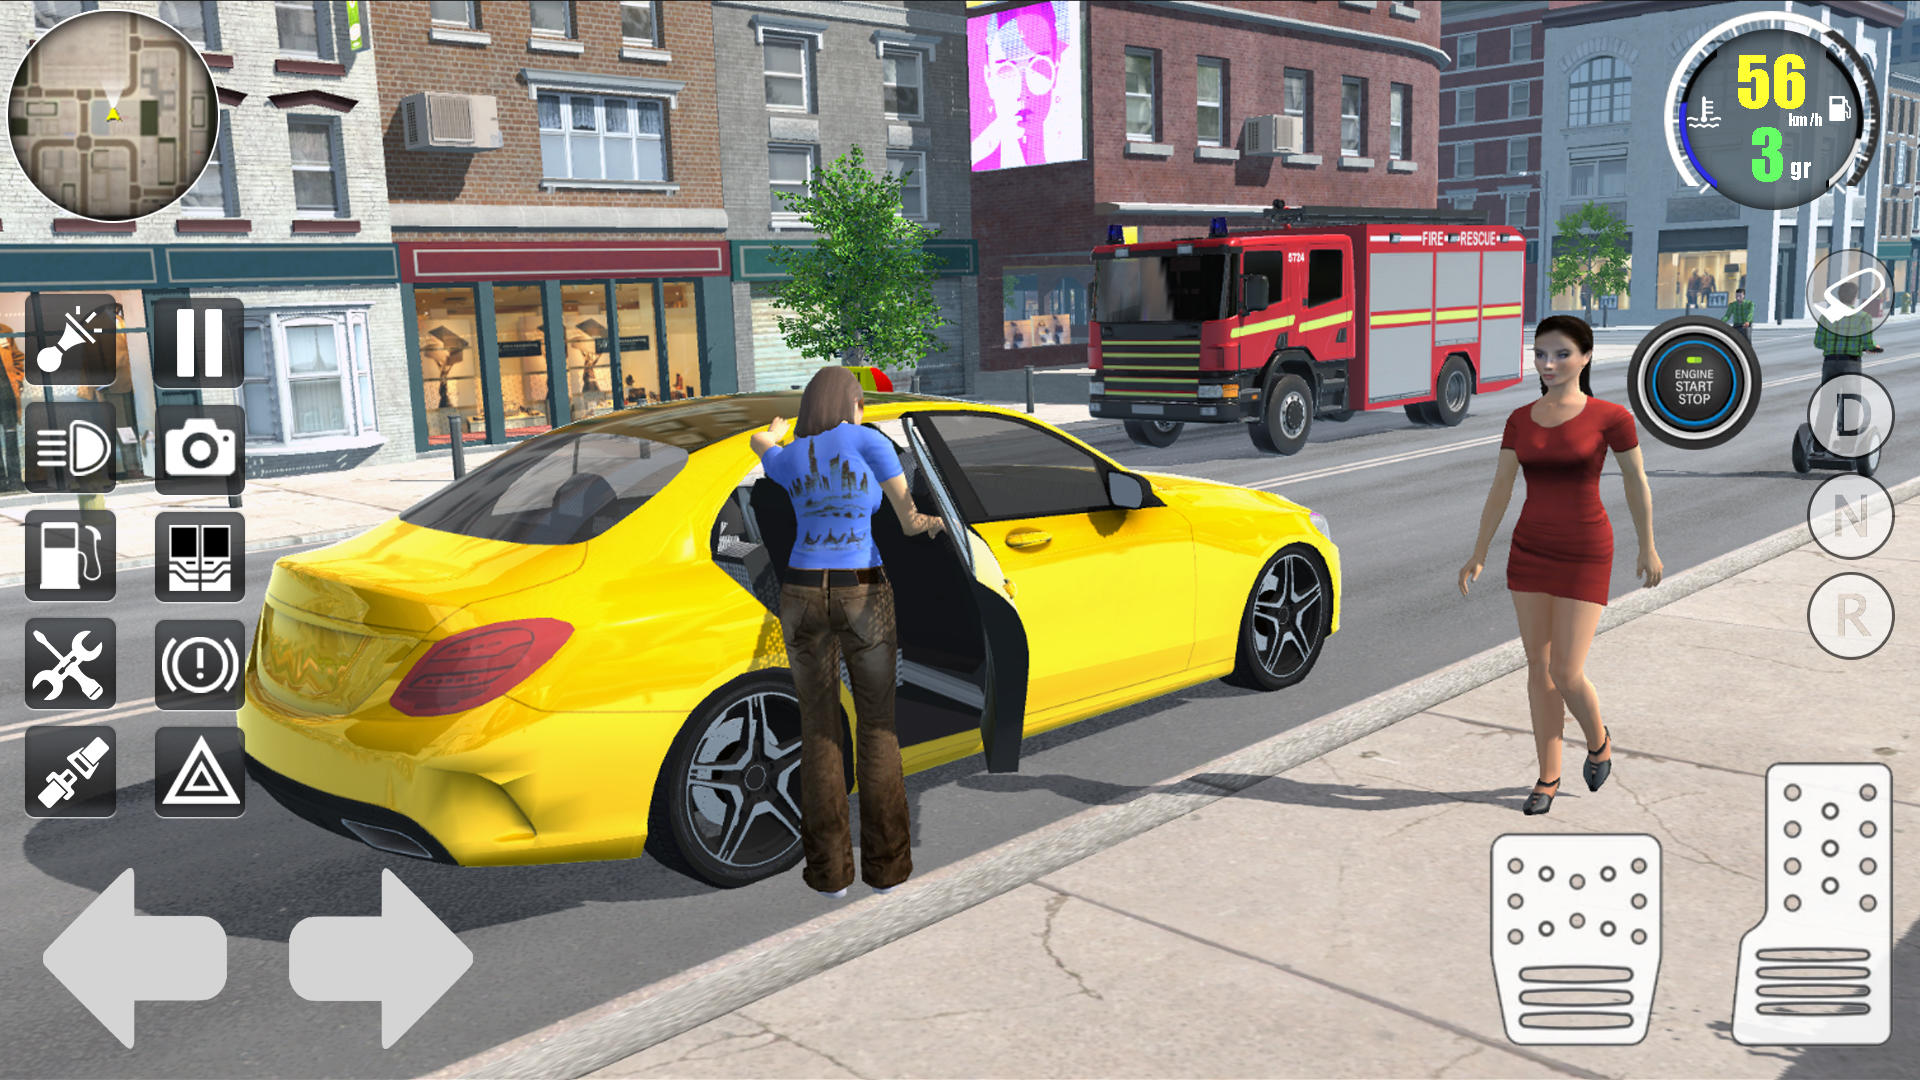 City Taxi Simulator 3D - Jogo Gratuito Online